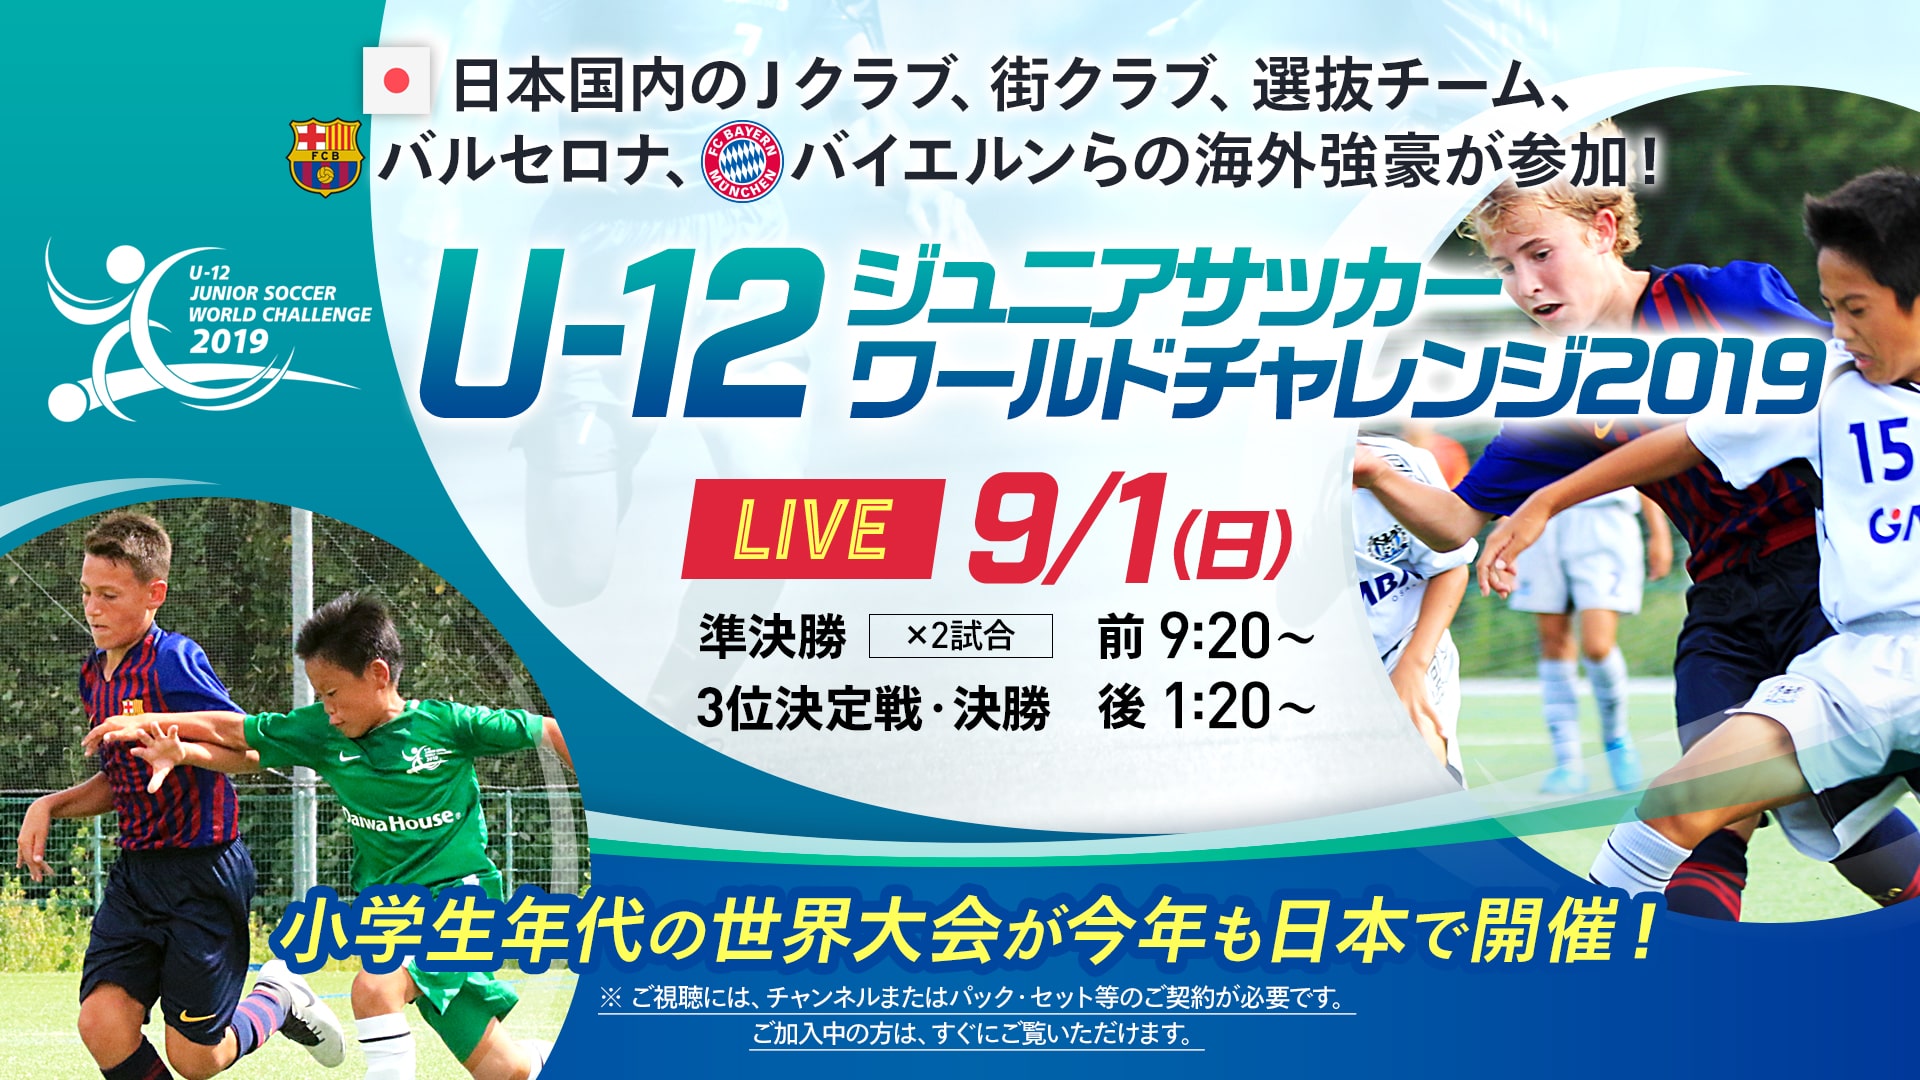 これを読めばもっとu 12ジュニアサッカーワールドチャレンジ19が楽しくなる 奈良クラブジュニアチームの挑戦 奈良クラブ Nara Club Official Site